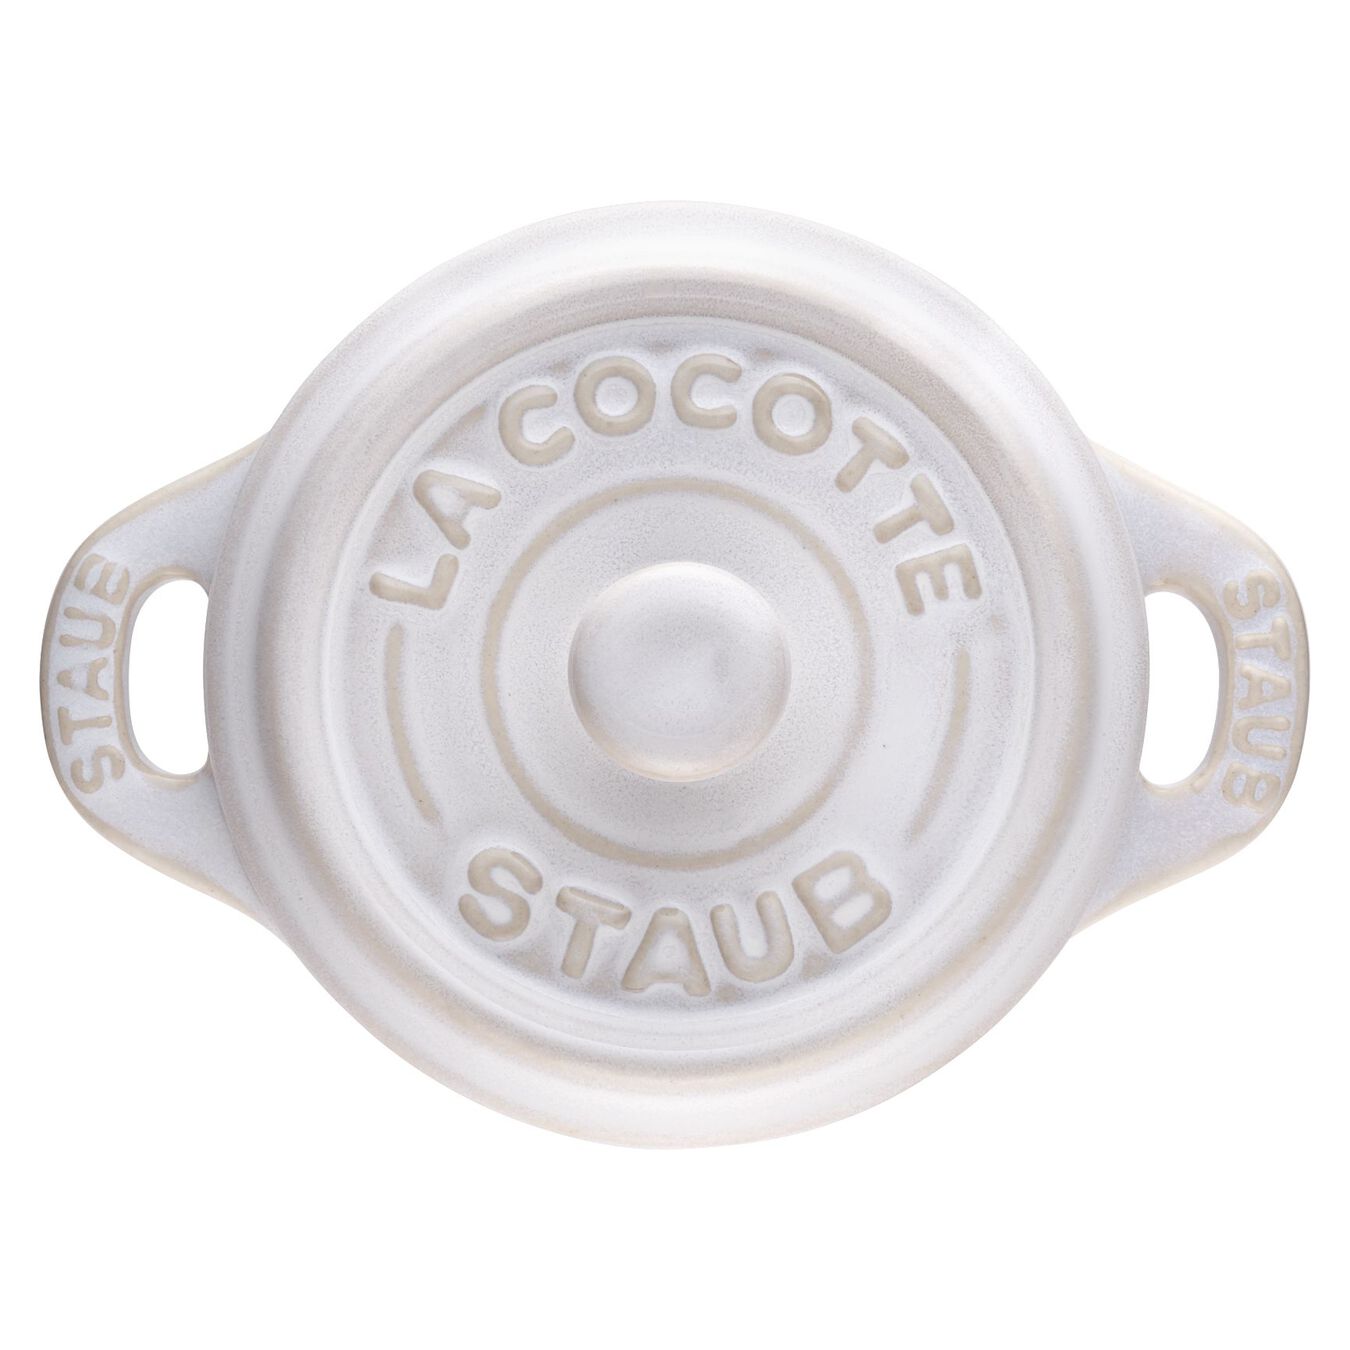 Mini Cocotte 10 cm, rund, Elfenbein-Weiß, Keramik,,large 5